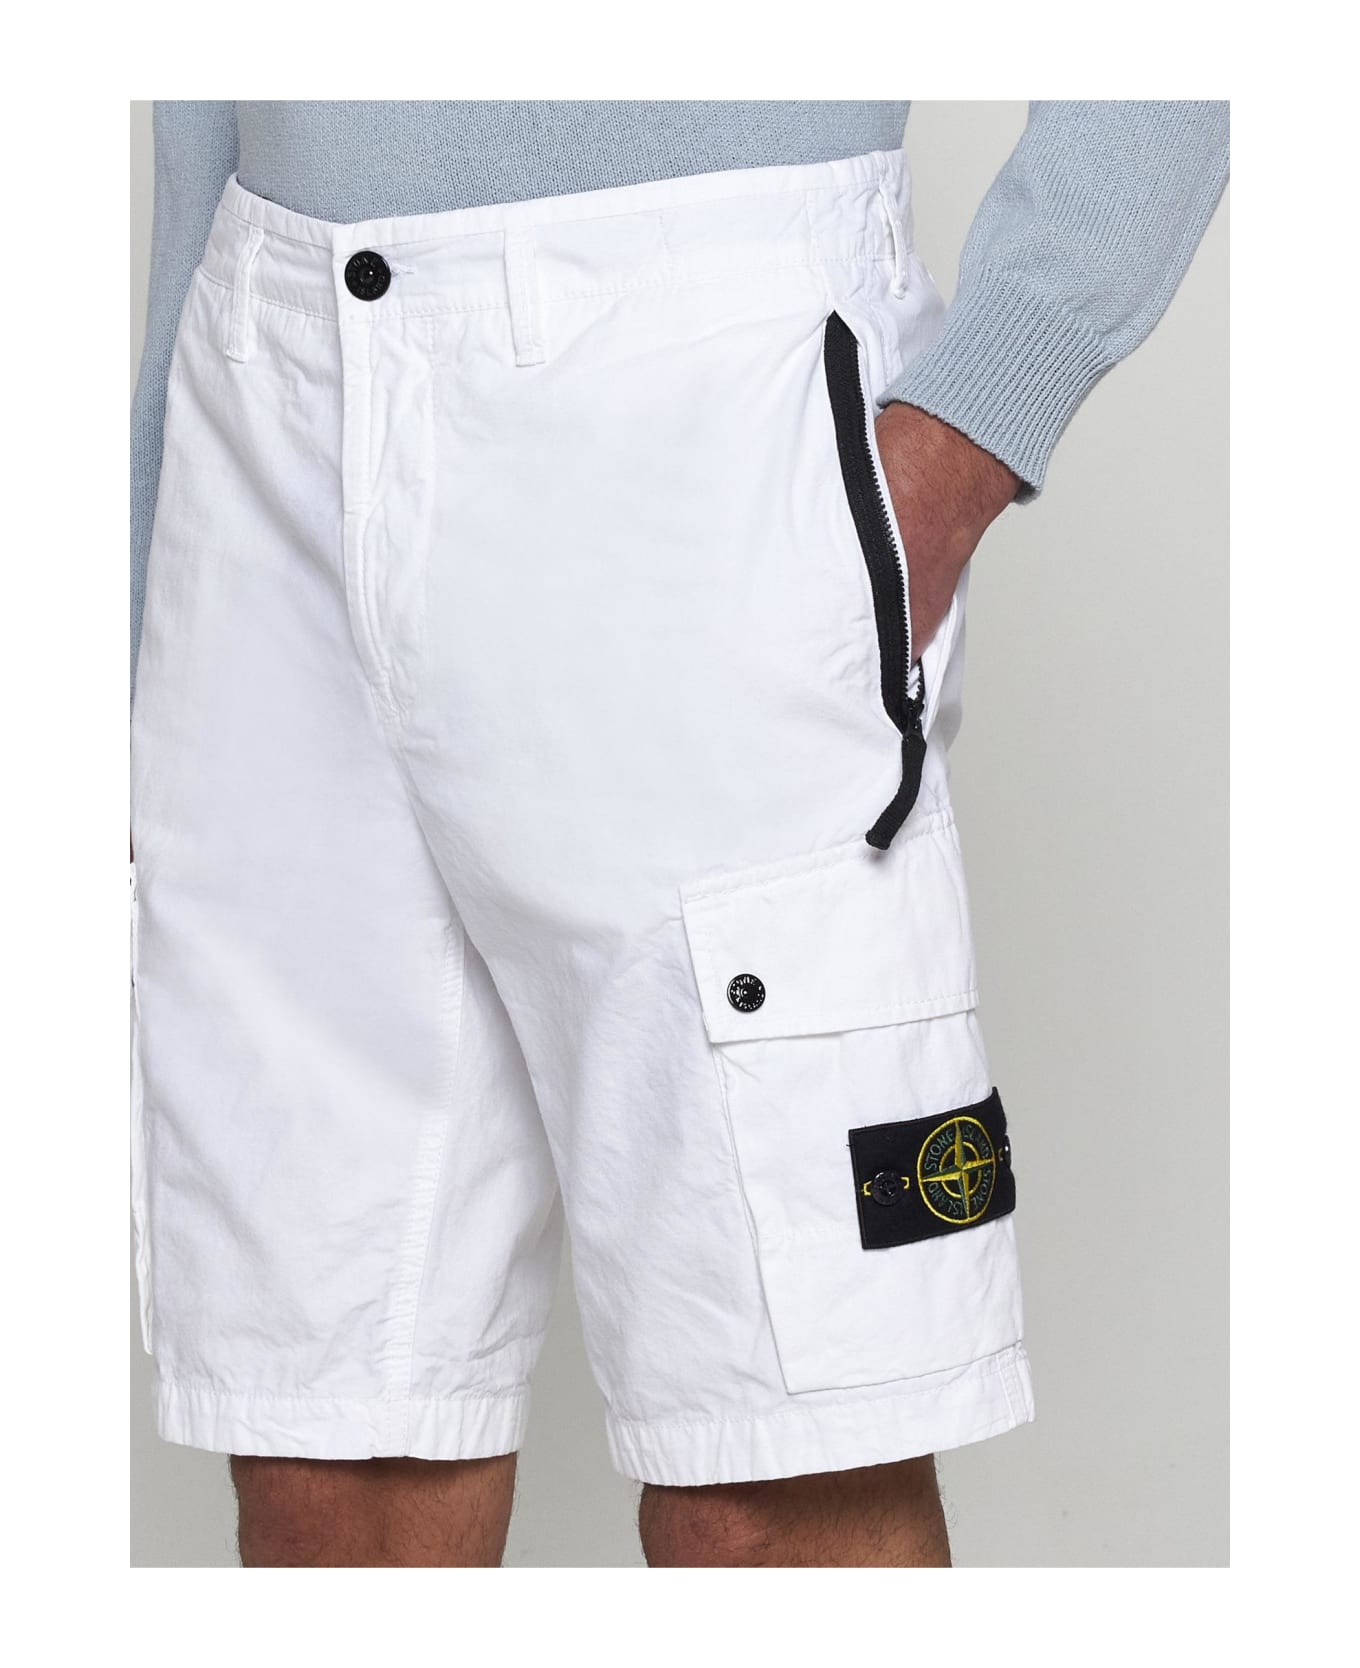 Stone Island Bermuda Shorts In Cotton Canvas L11wa - BIANCO